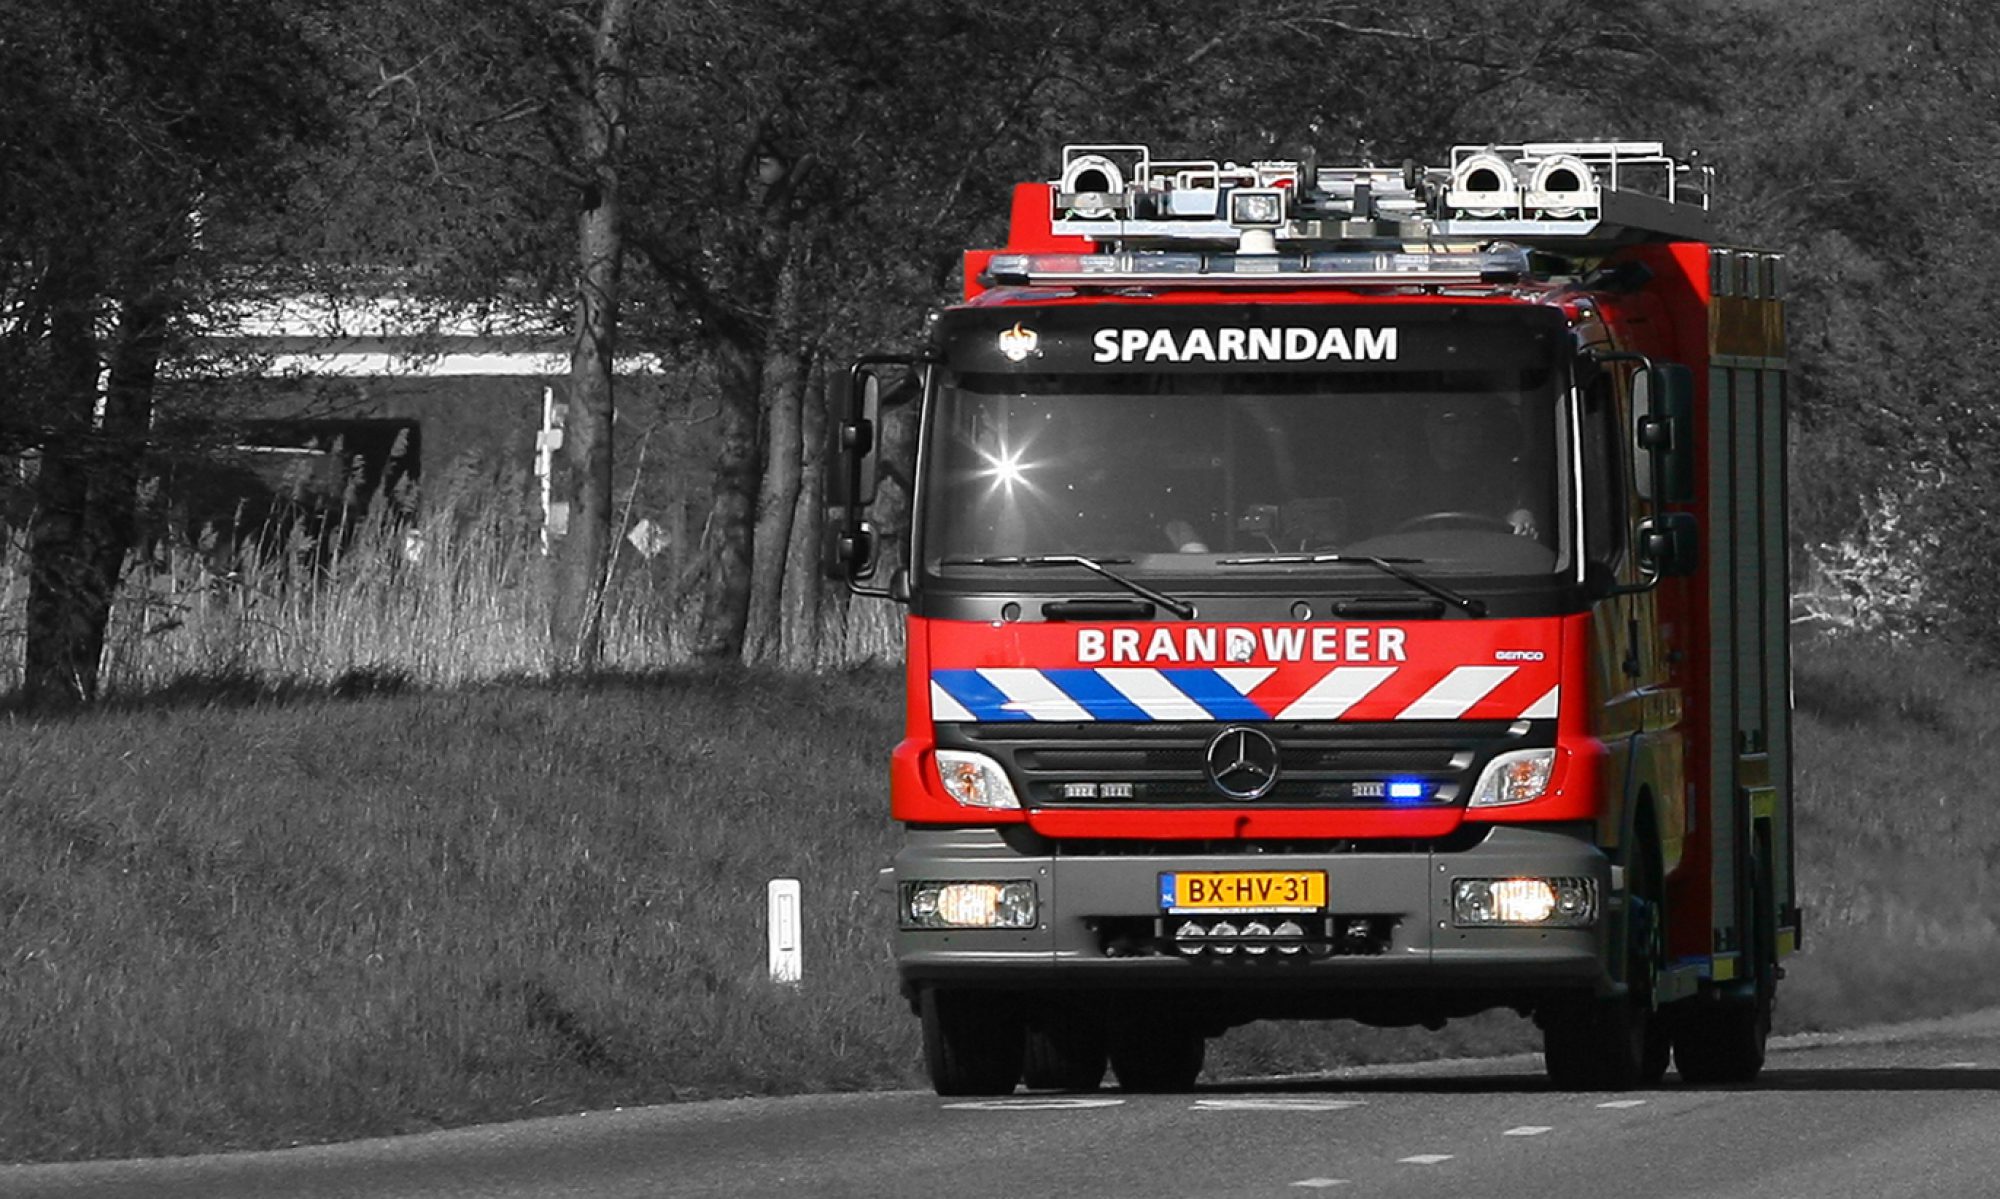 Brandweer Spaarndam